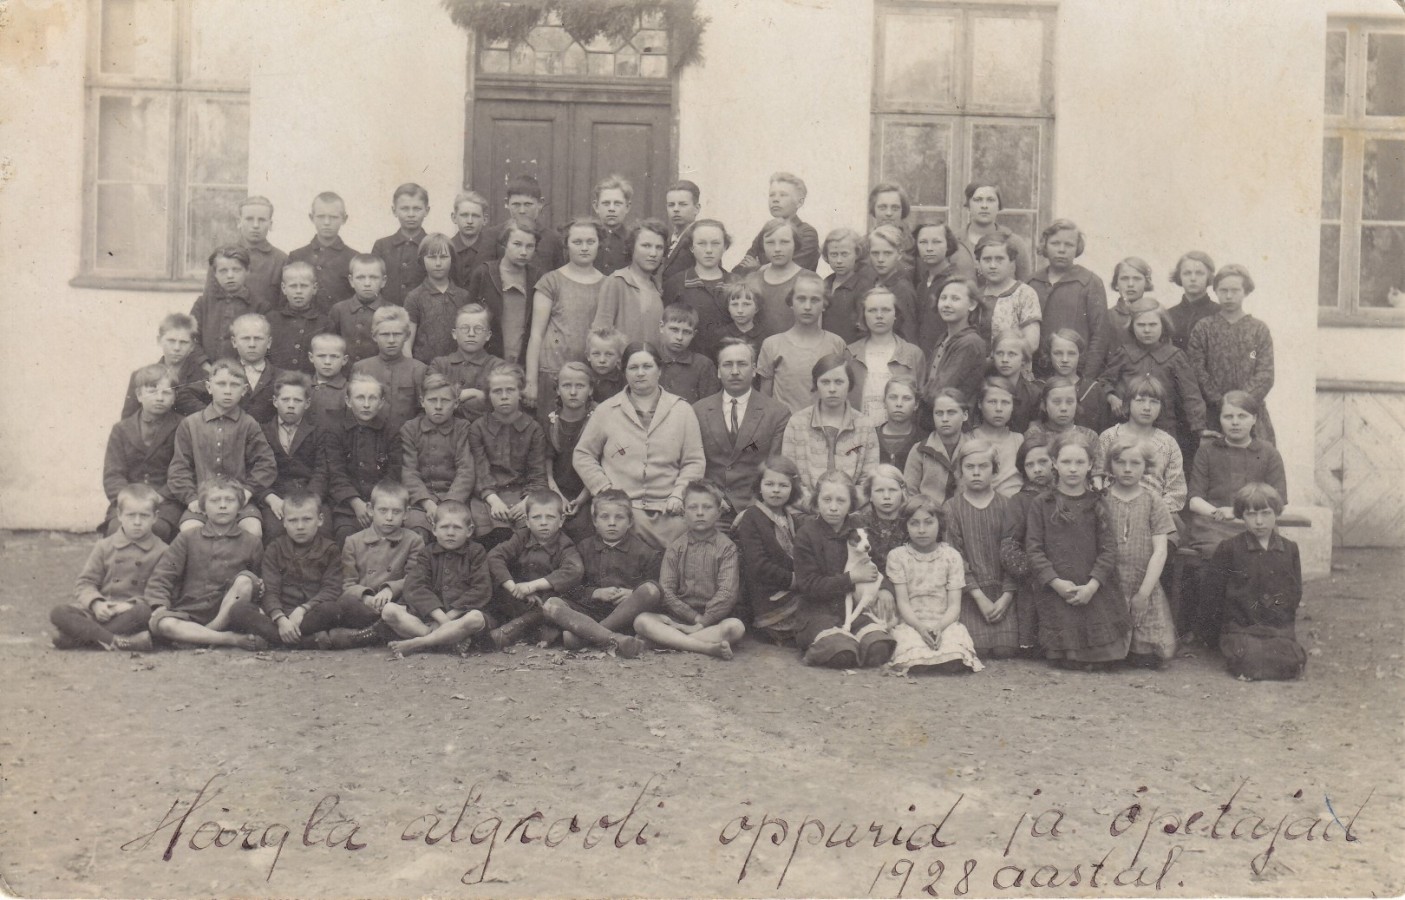 Härgla algkooli pere 1928